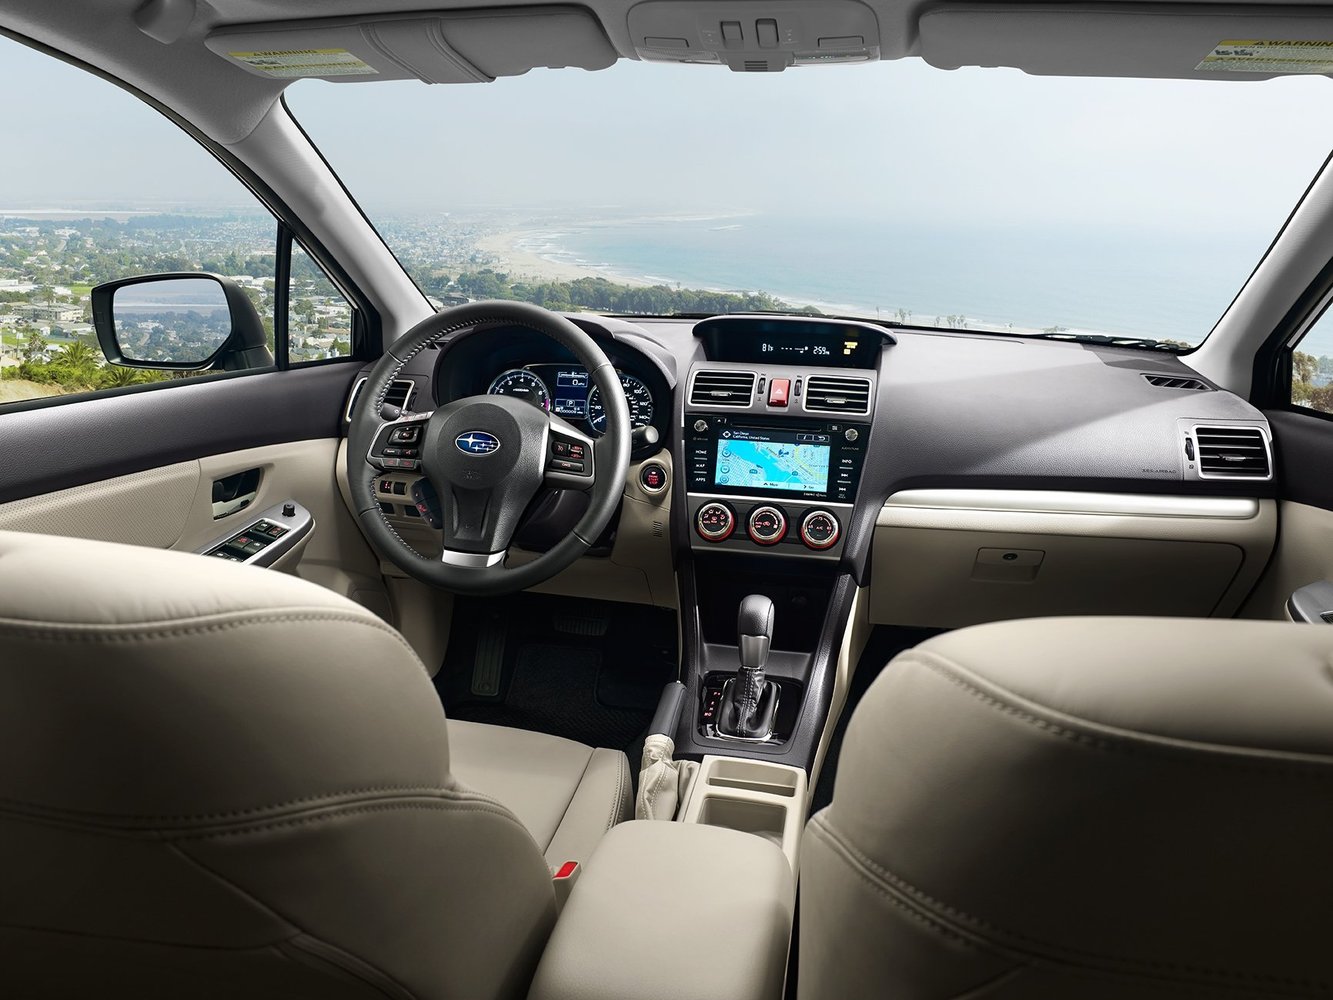 седан Subaru Impreza 2015 - 2016г выпуска модификация 1.6 CVT (114 л.с.) 4×4